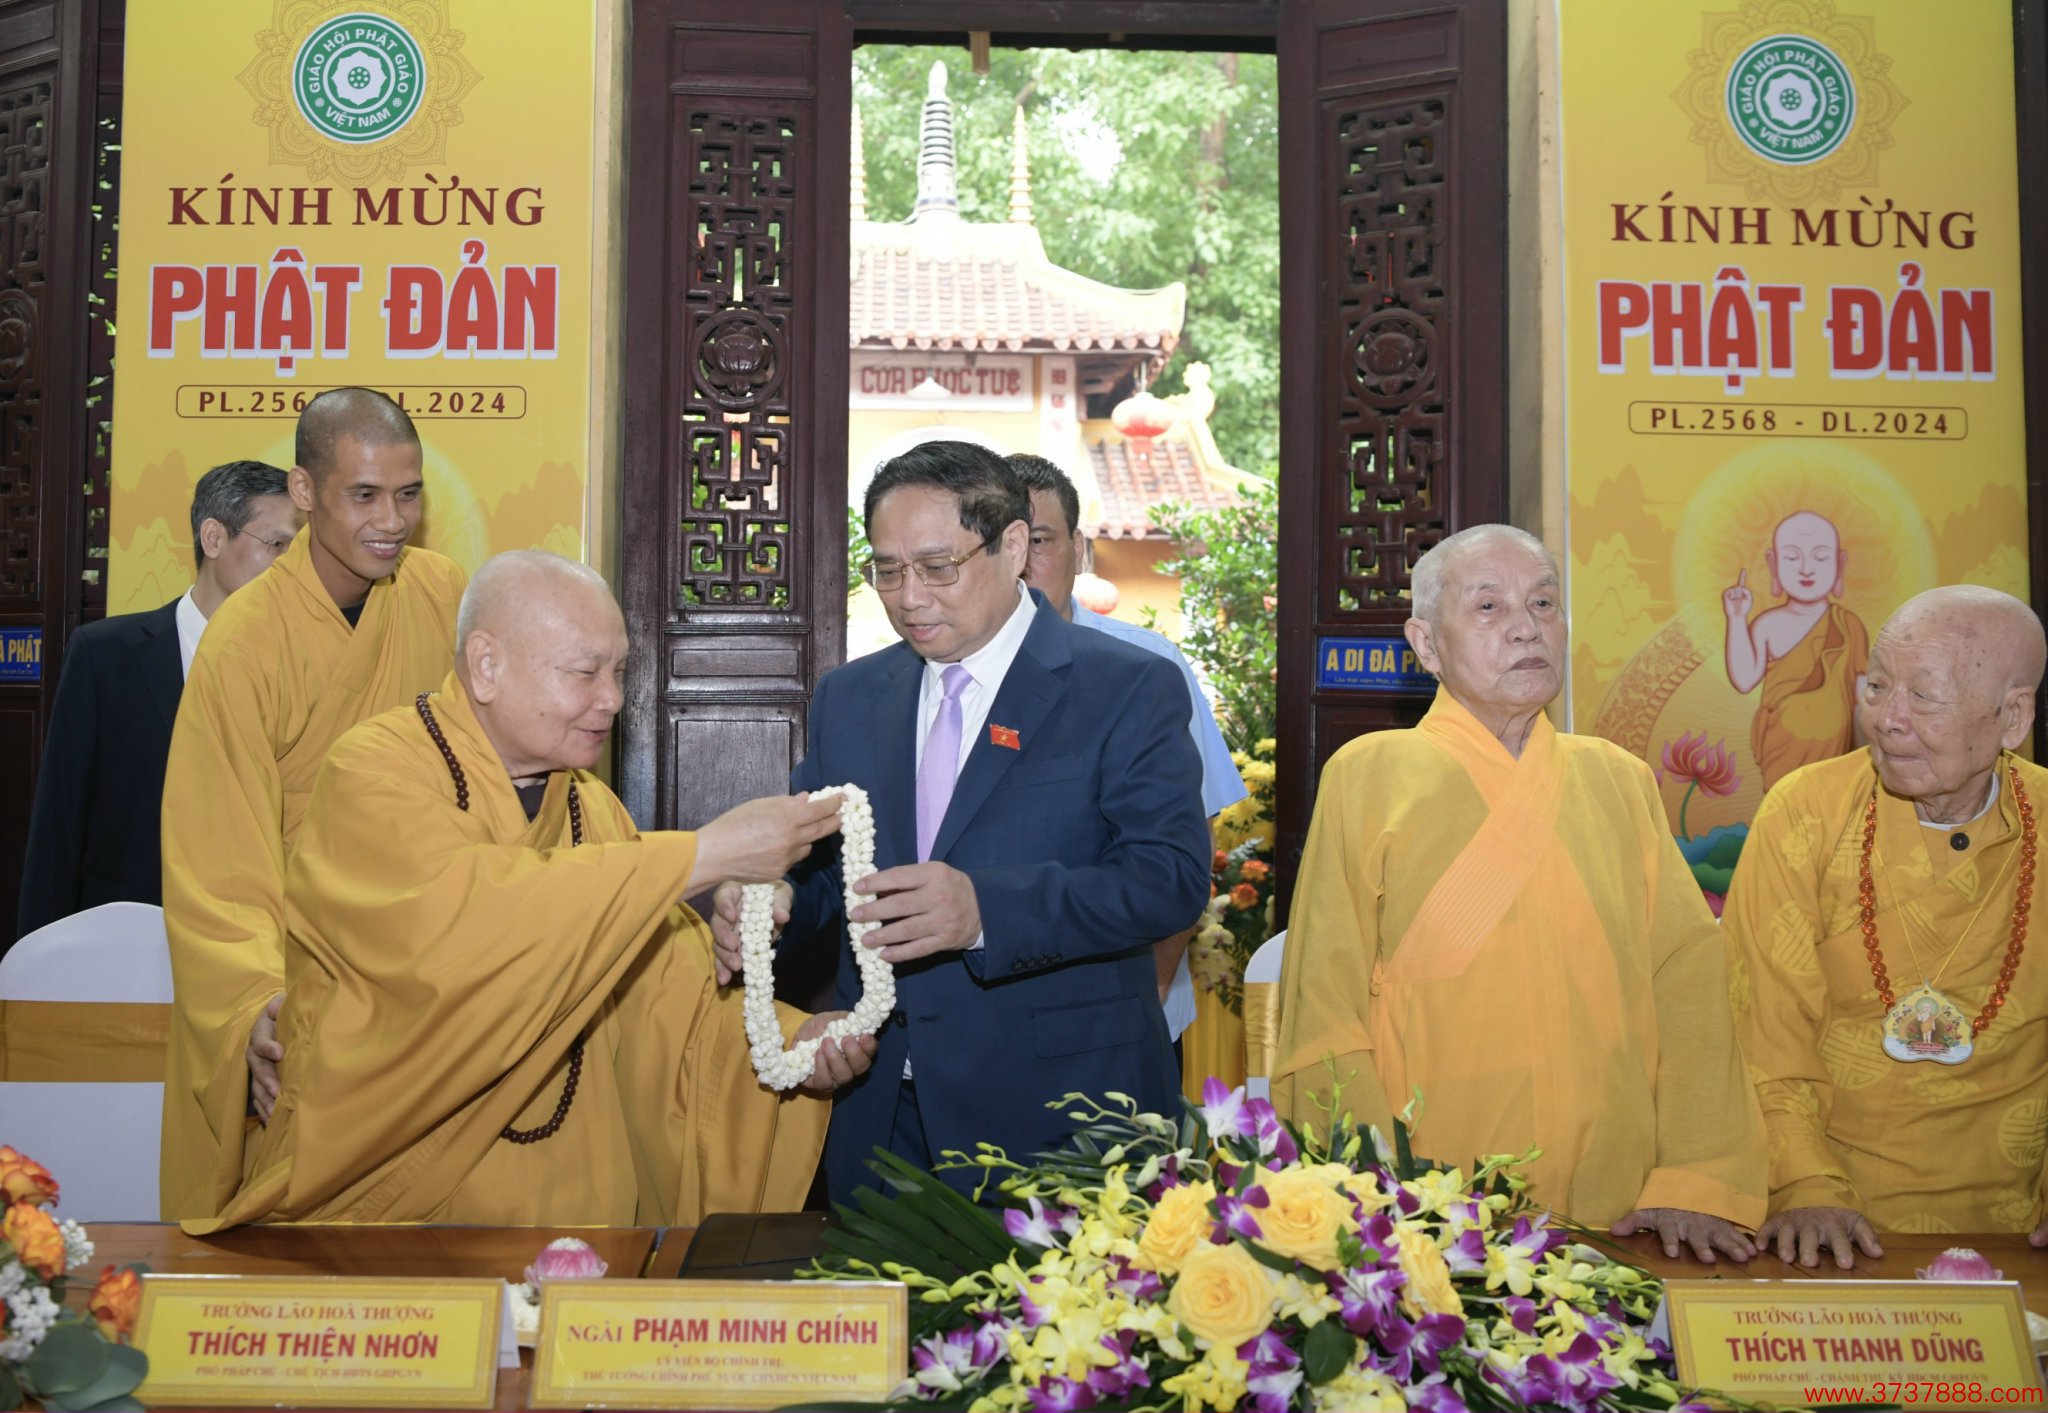 [Caption]Thủ tướng Chính phủ Phạm Minh Chính với chức sắc， tăng ni， Phật tử tại chùa Quán Sứ， Hà Nội